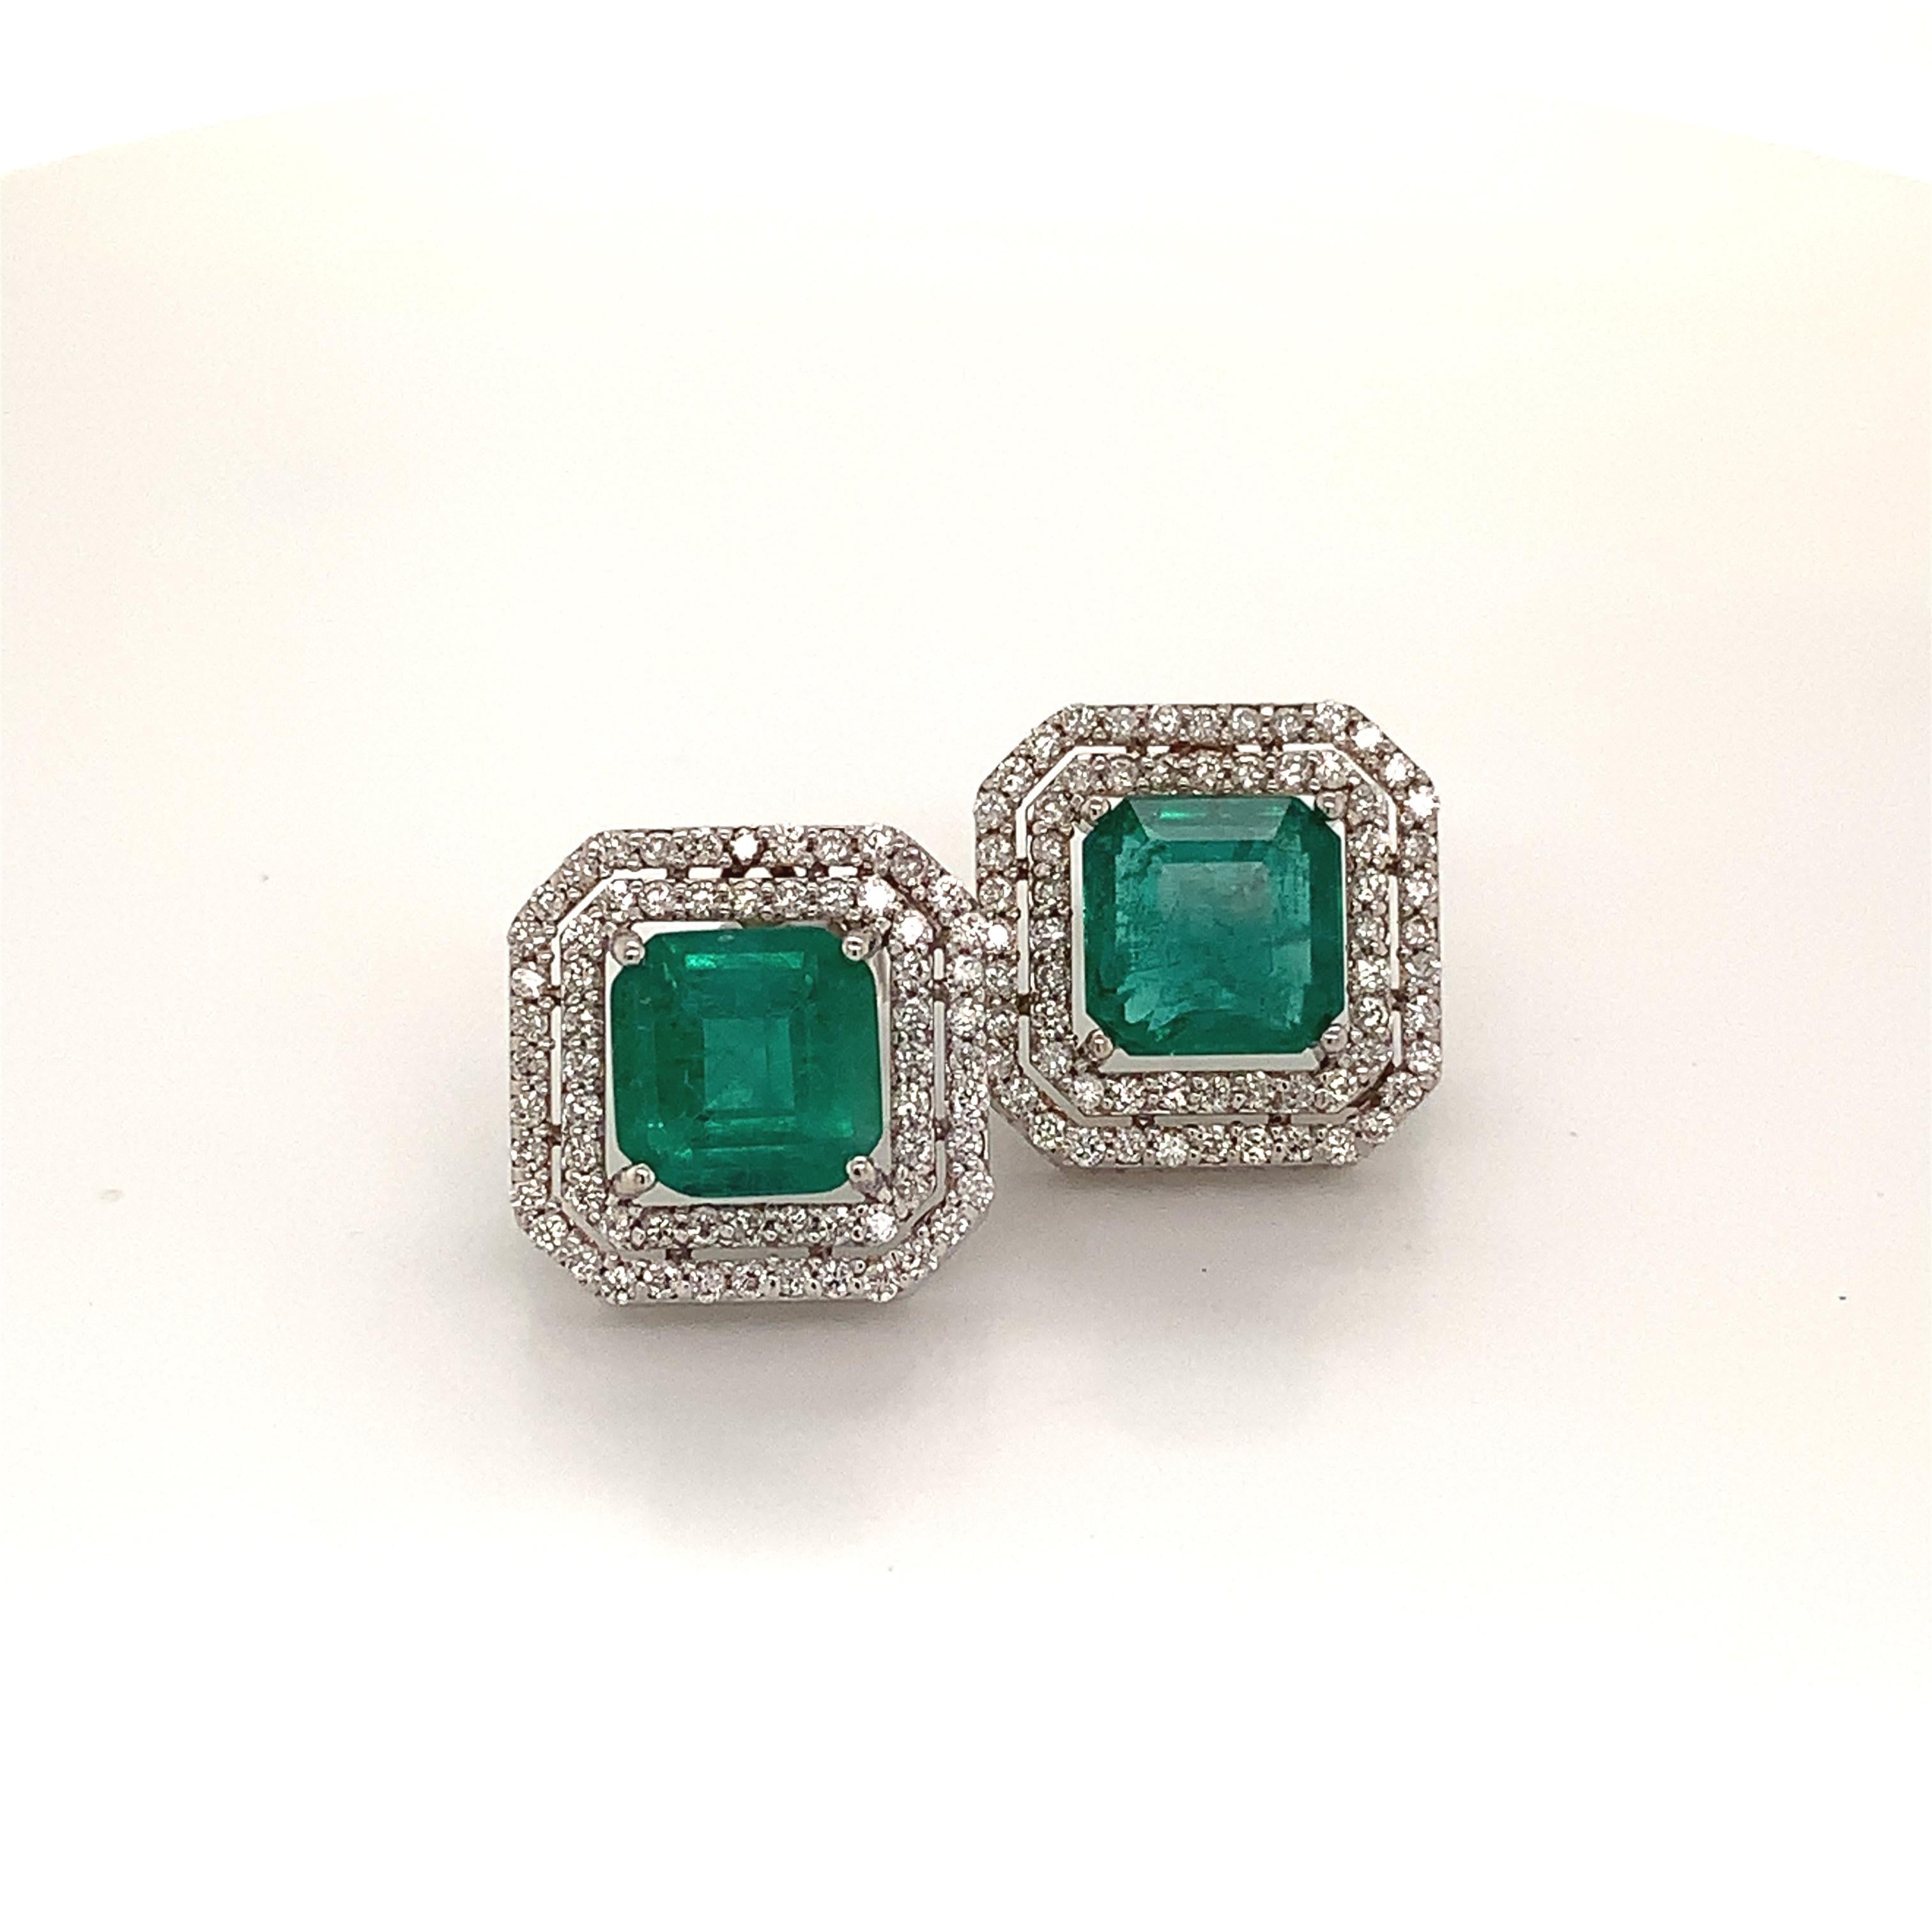 Natürliche fein facettiert Qualität Smaragd Diamant Ohrringe 14k Gold 4,72 TCW zertifiziert $8.950 113440

Dies ist ein einzigartiges, maßgeschneidertes, glamouröses Schmuckstück!

Nichts sagt mehr 